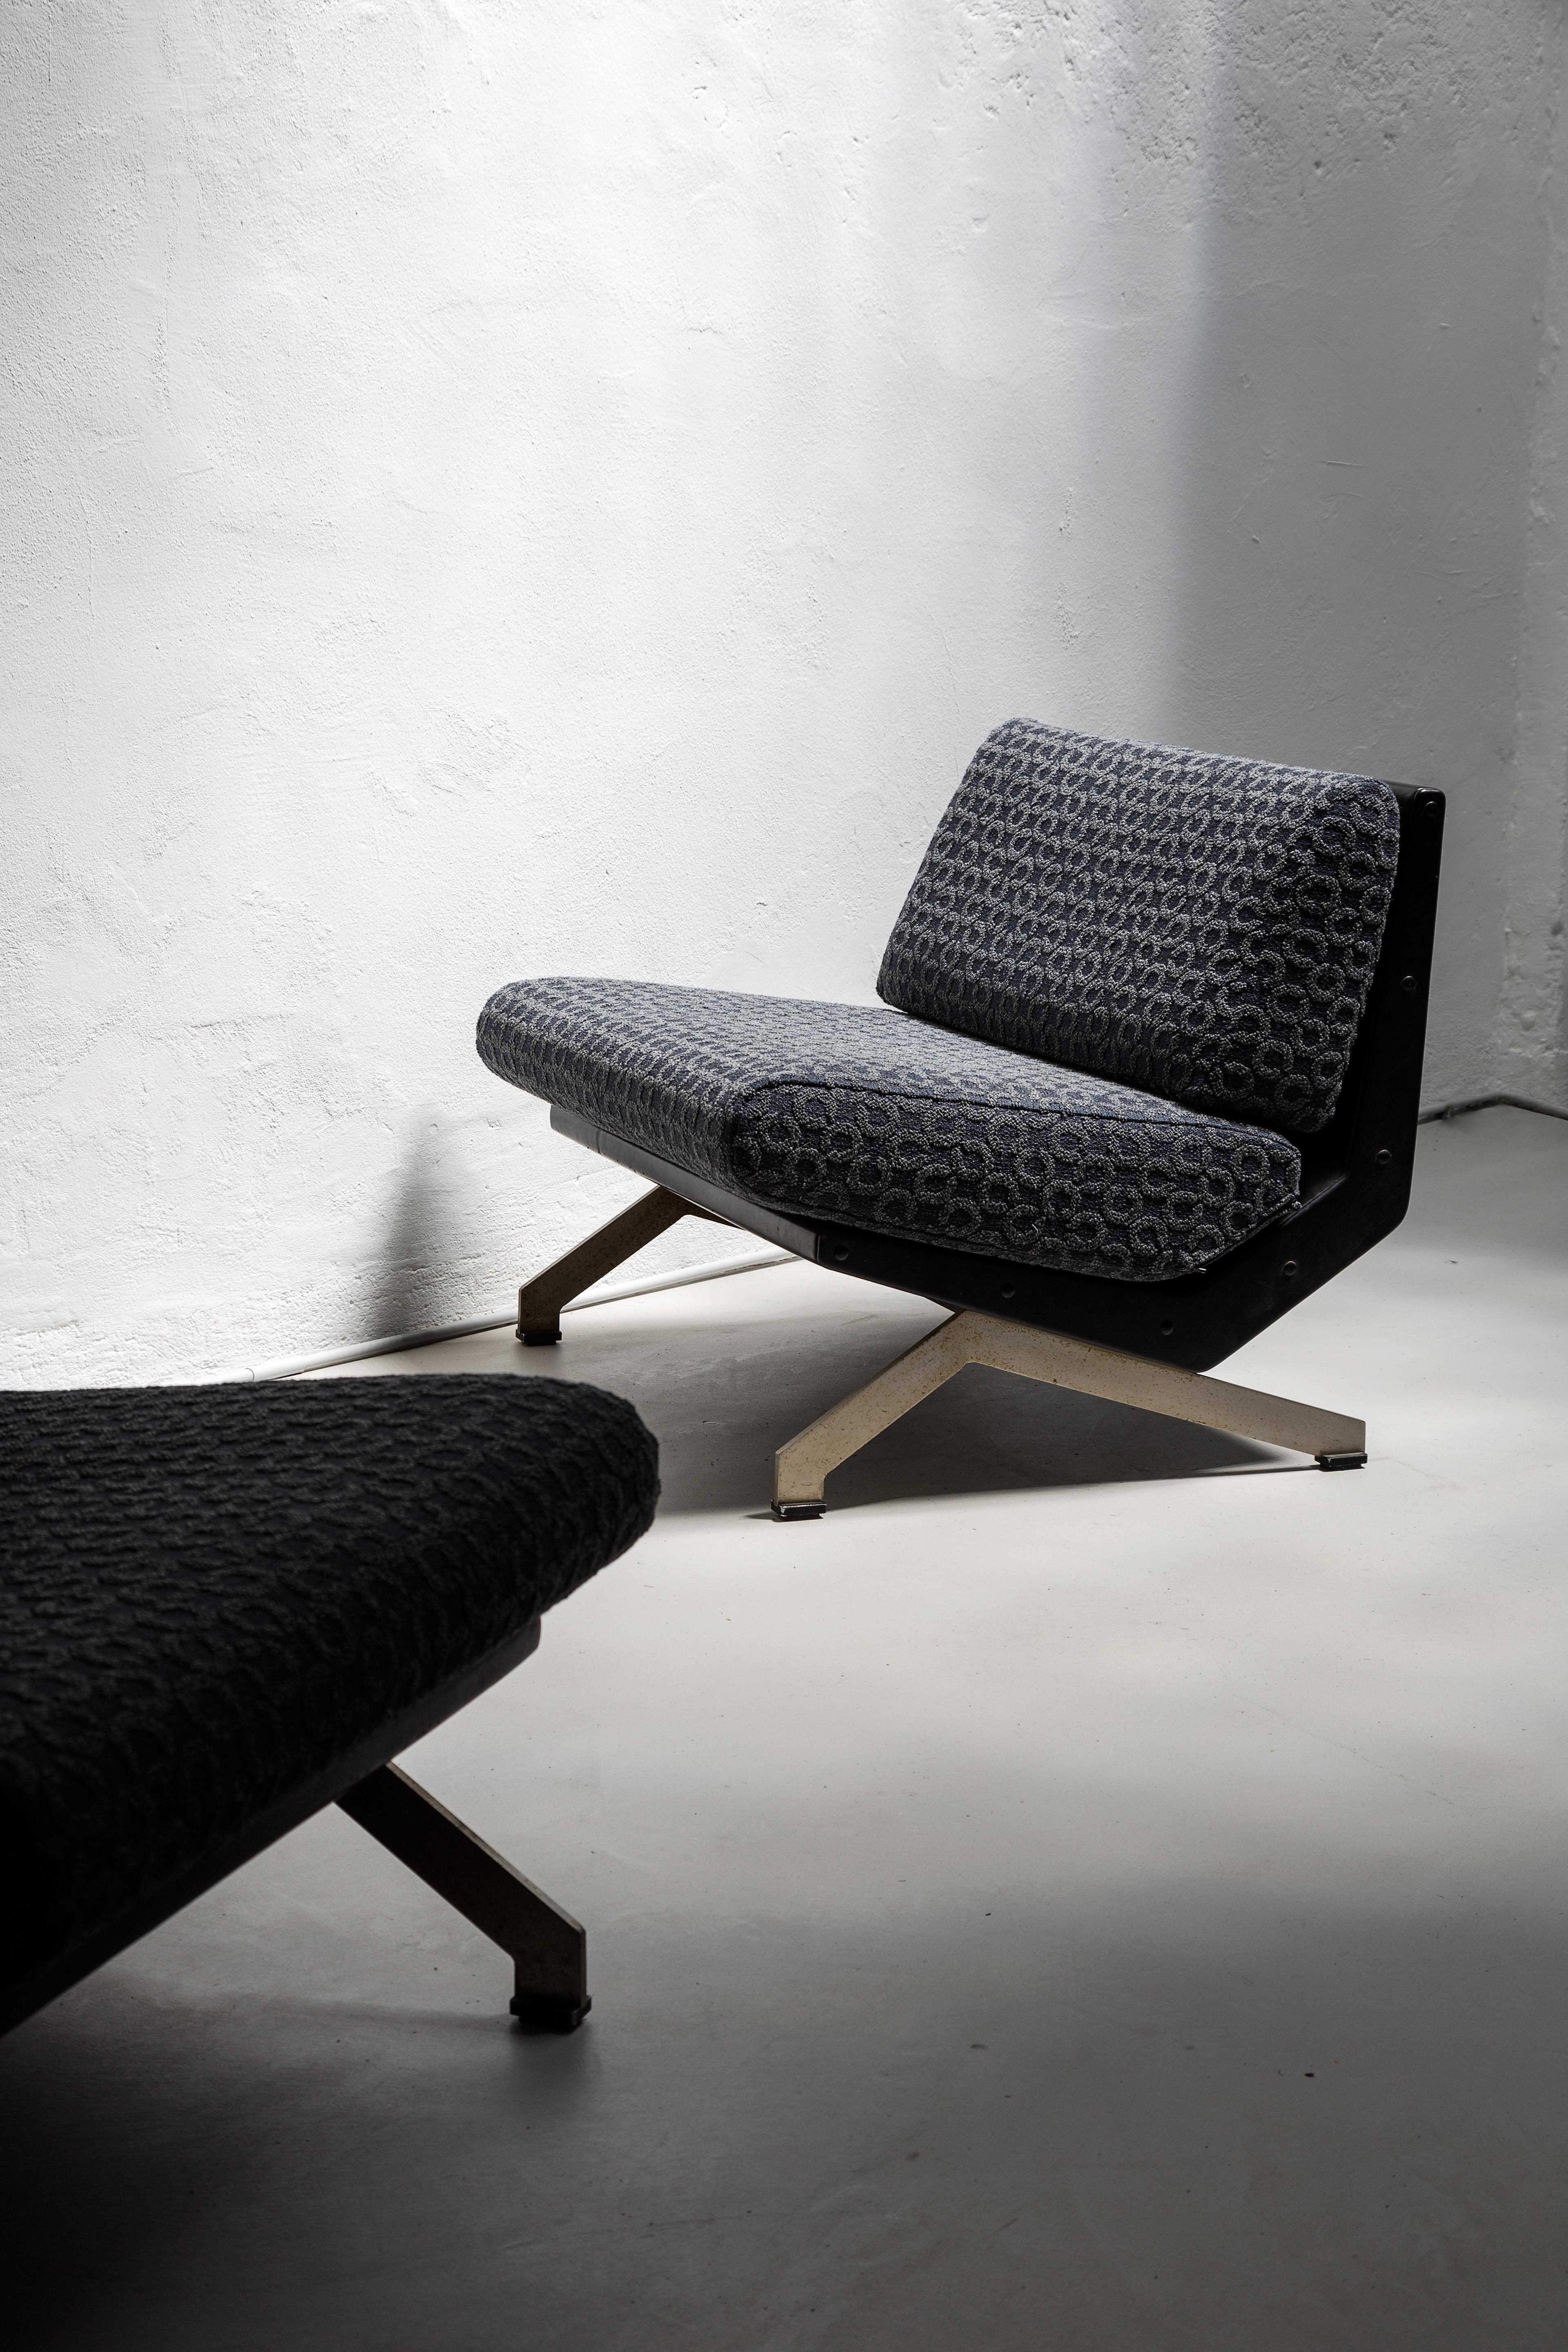 Wenn Sie denken, dass diese Lounge-Sessel typisch für die Achtziger sind, dann irren Sie sich: So unglaublich es auch erscheinen mag, Gianni Moscatelli hat diese Schönheiten 1969 für die italienische Möbelmarke Formanova entworfen. Die Wahl der